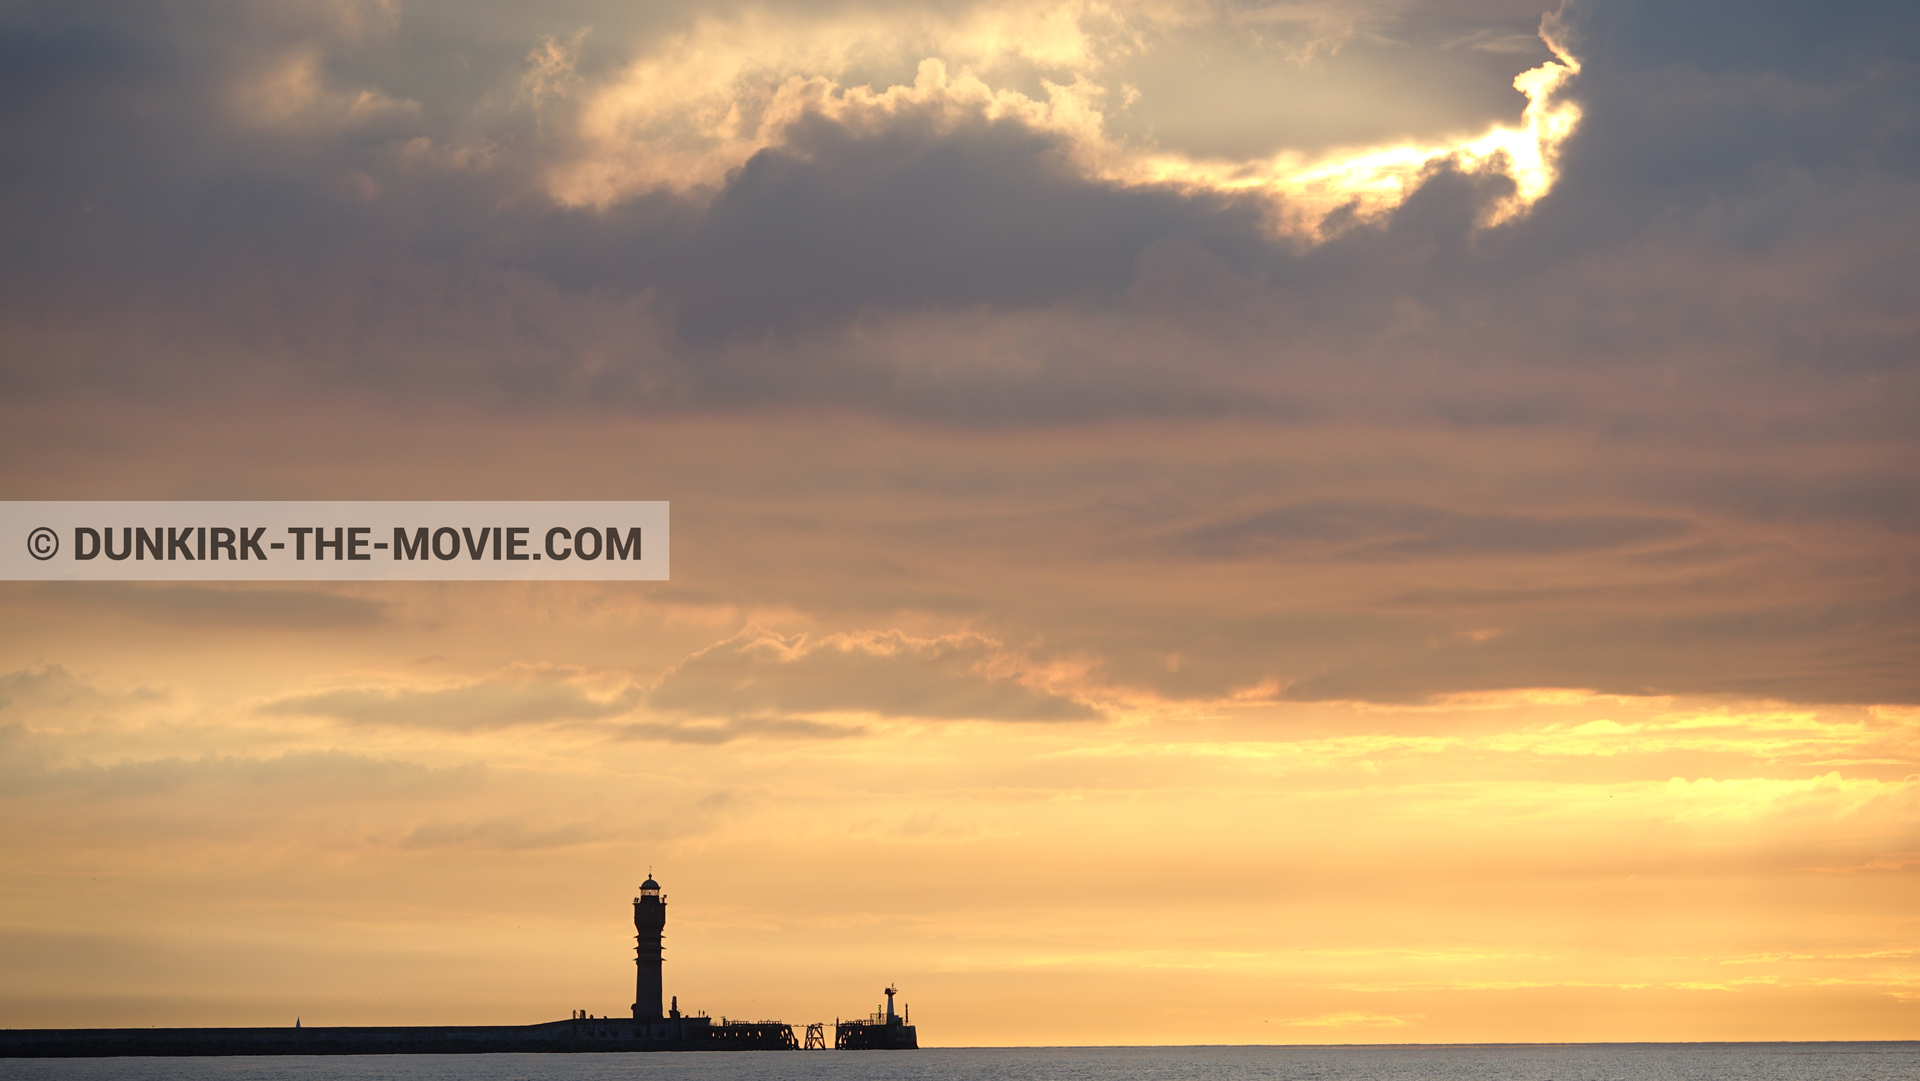 Fotos con faro de Saint-Pol-sur-Mer,  durante el rodaje de la película Dunkerque de Nolan